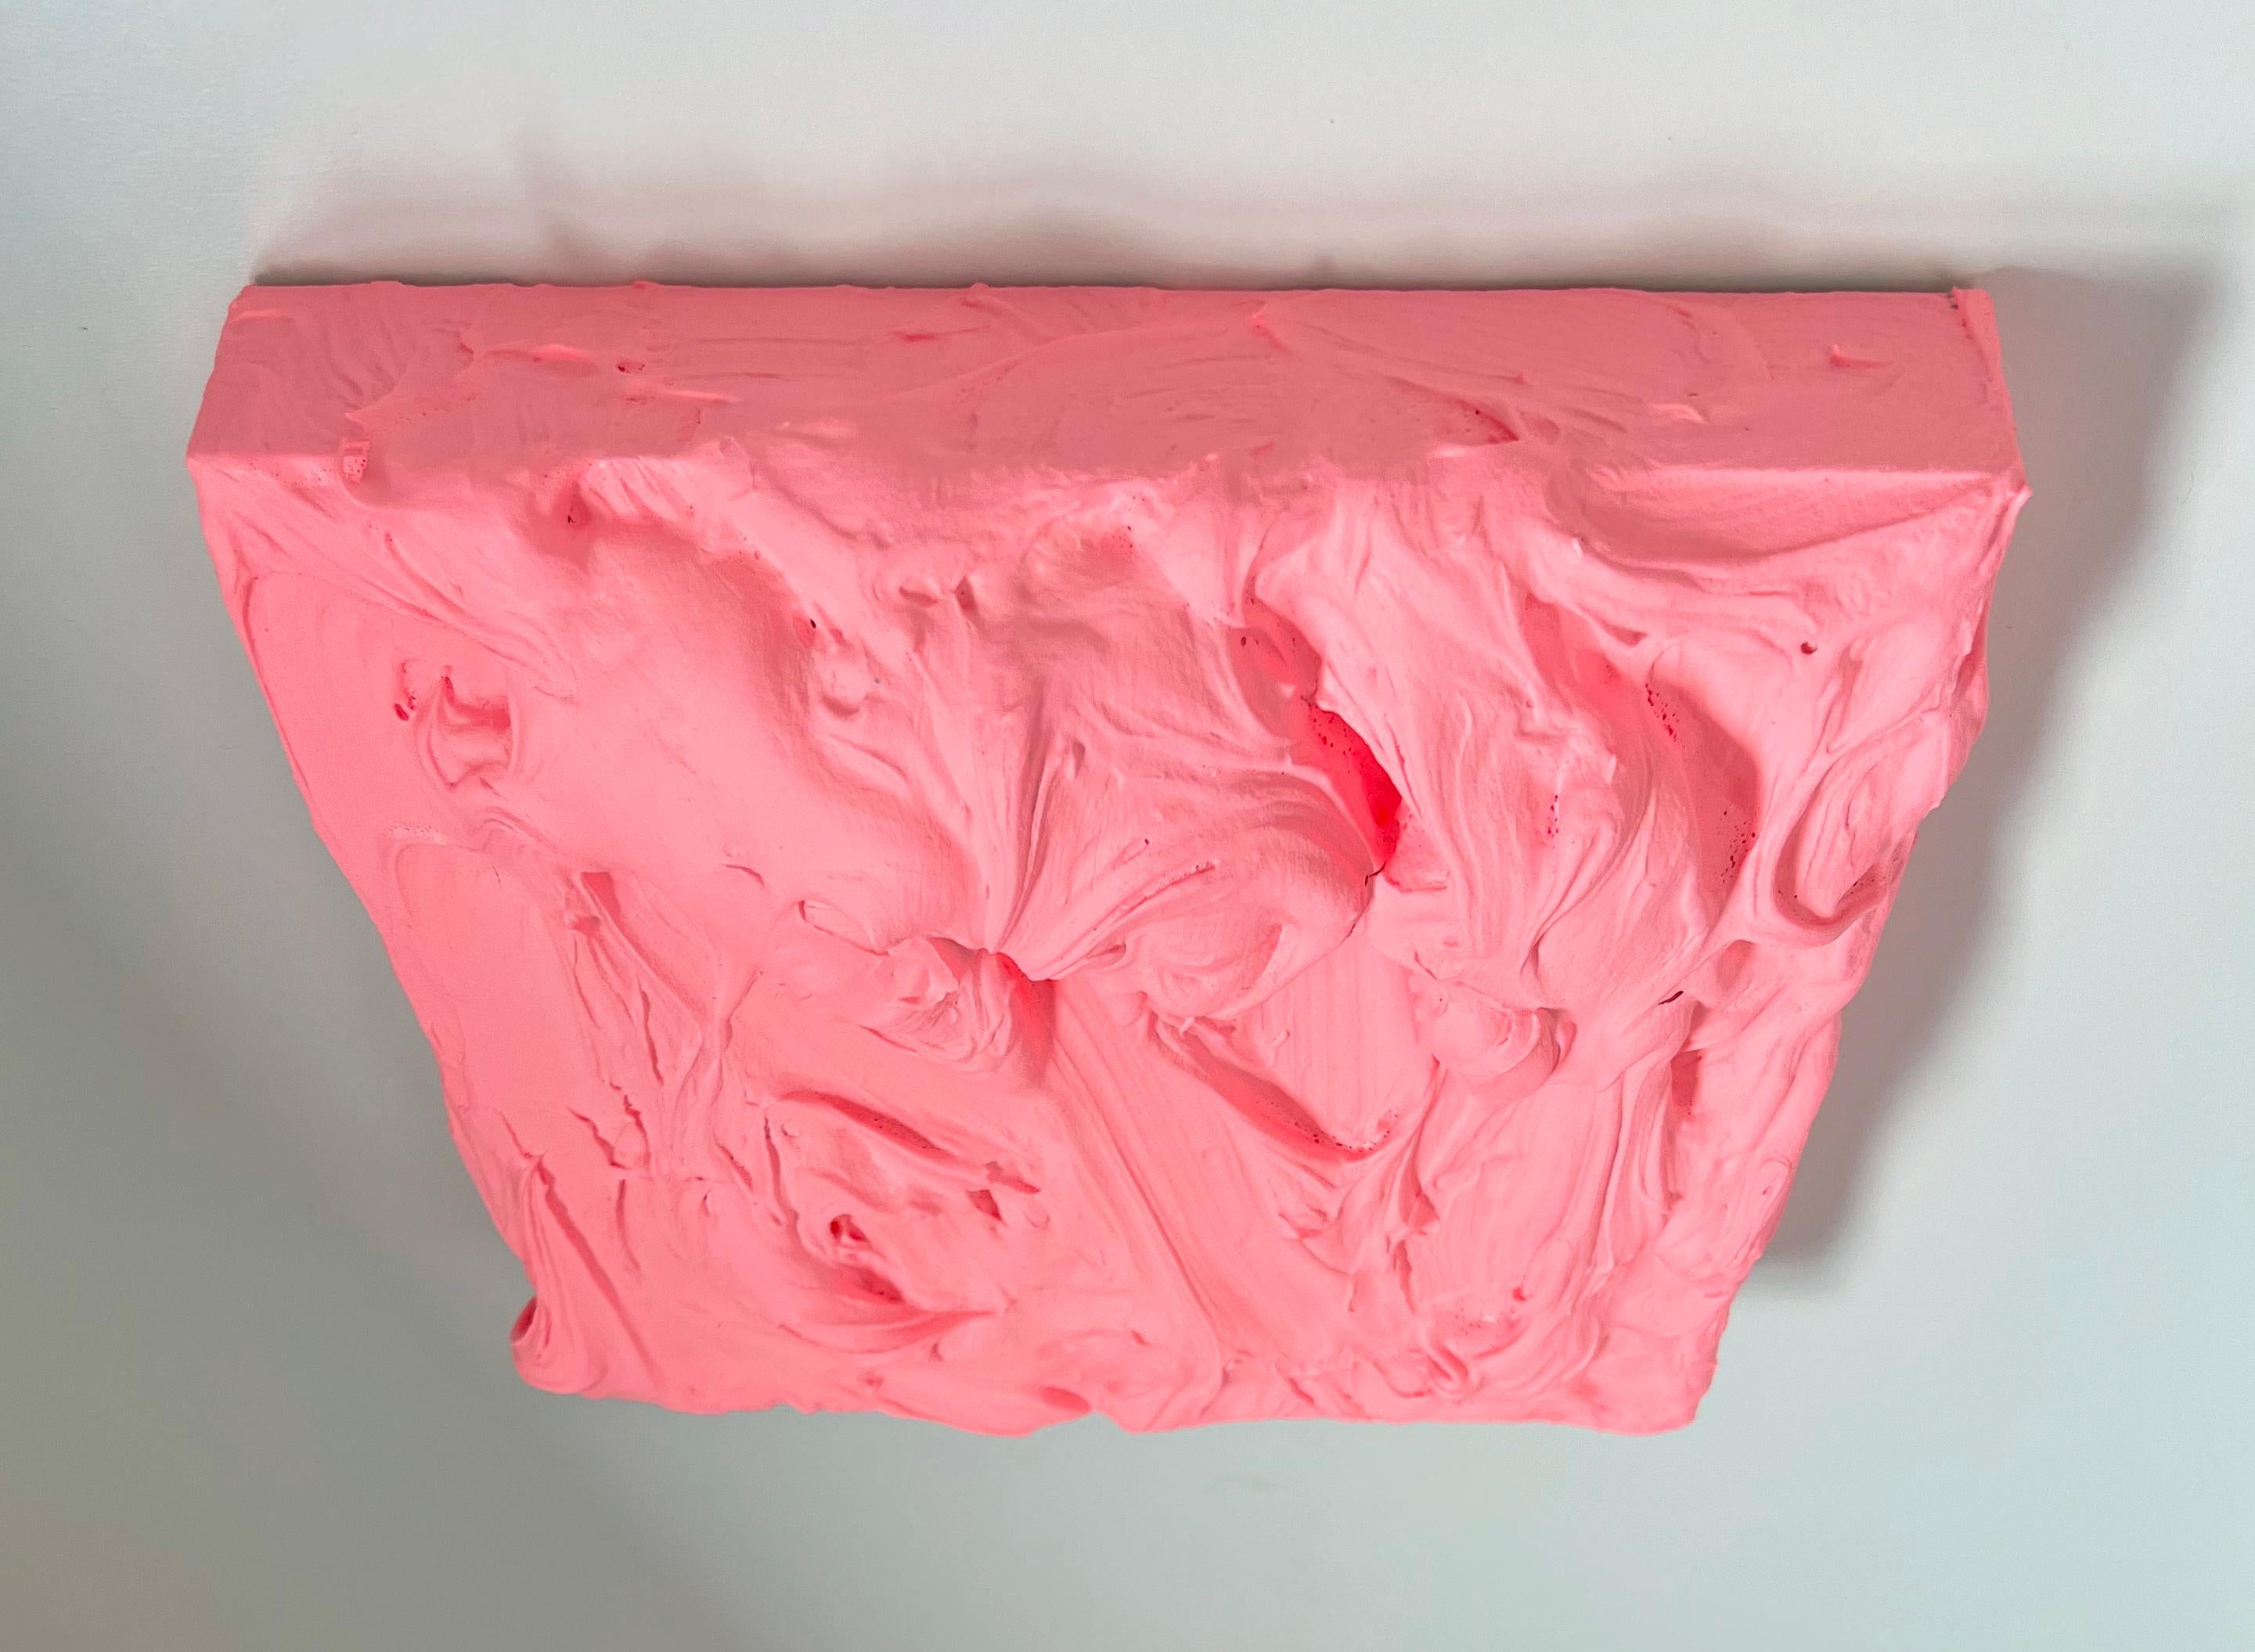  80er Pfirsich Excess (rosafarbenes, mehrfarbiges, monochromes, quadratisches Gemälde im Pop-Design) (Pink), Abstract Painting, von Chloe Hedden